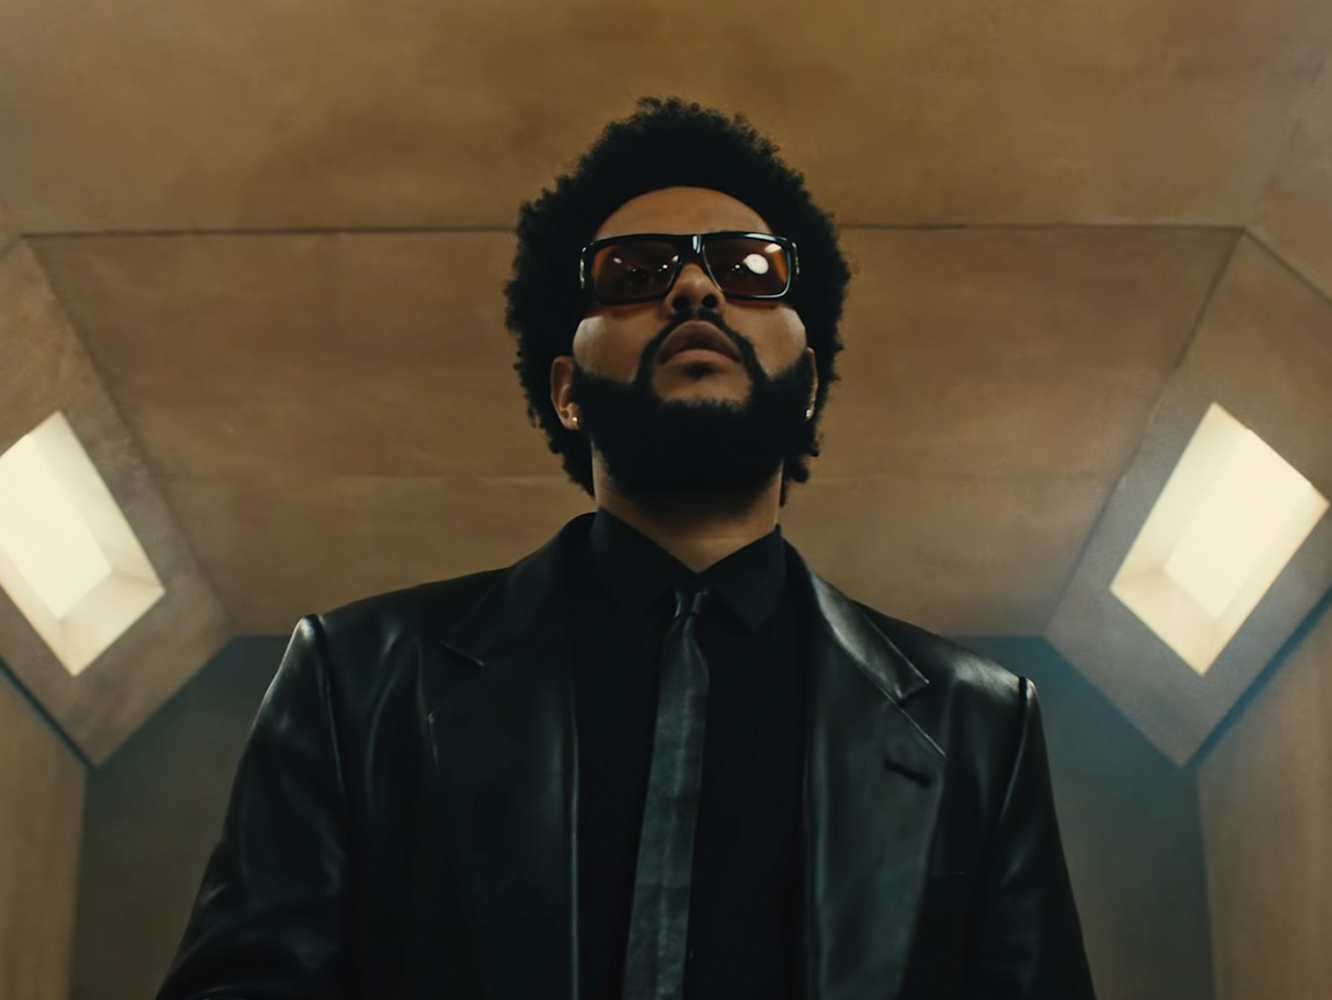  The Weeknd batalla contra Rapunzel en el vídeo de su brillante nuevo single, ‘Take My Breath’